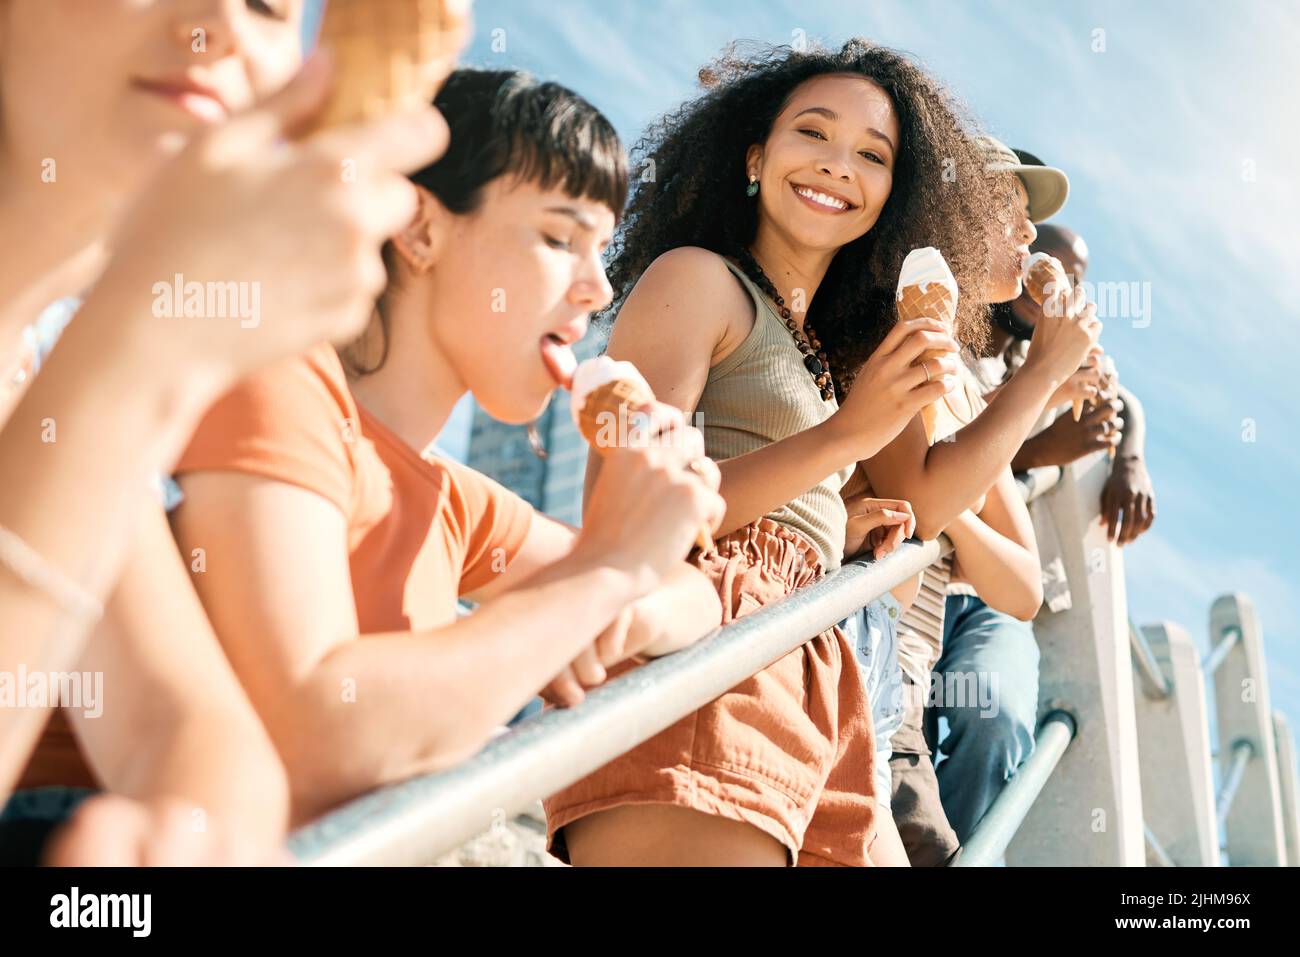 Le meilleur jour jamais vu. Portrait court d'une jeune femme attrayante qui profite d'une glace sur la plage avec ses amies. Banque D'Images